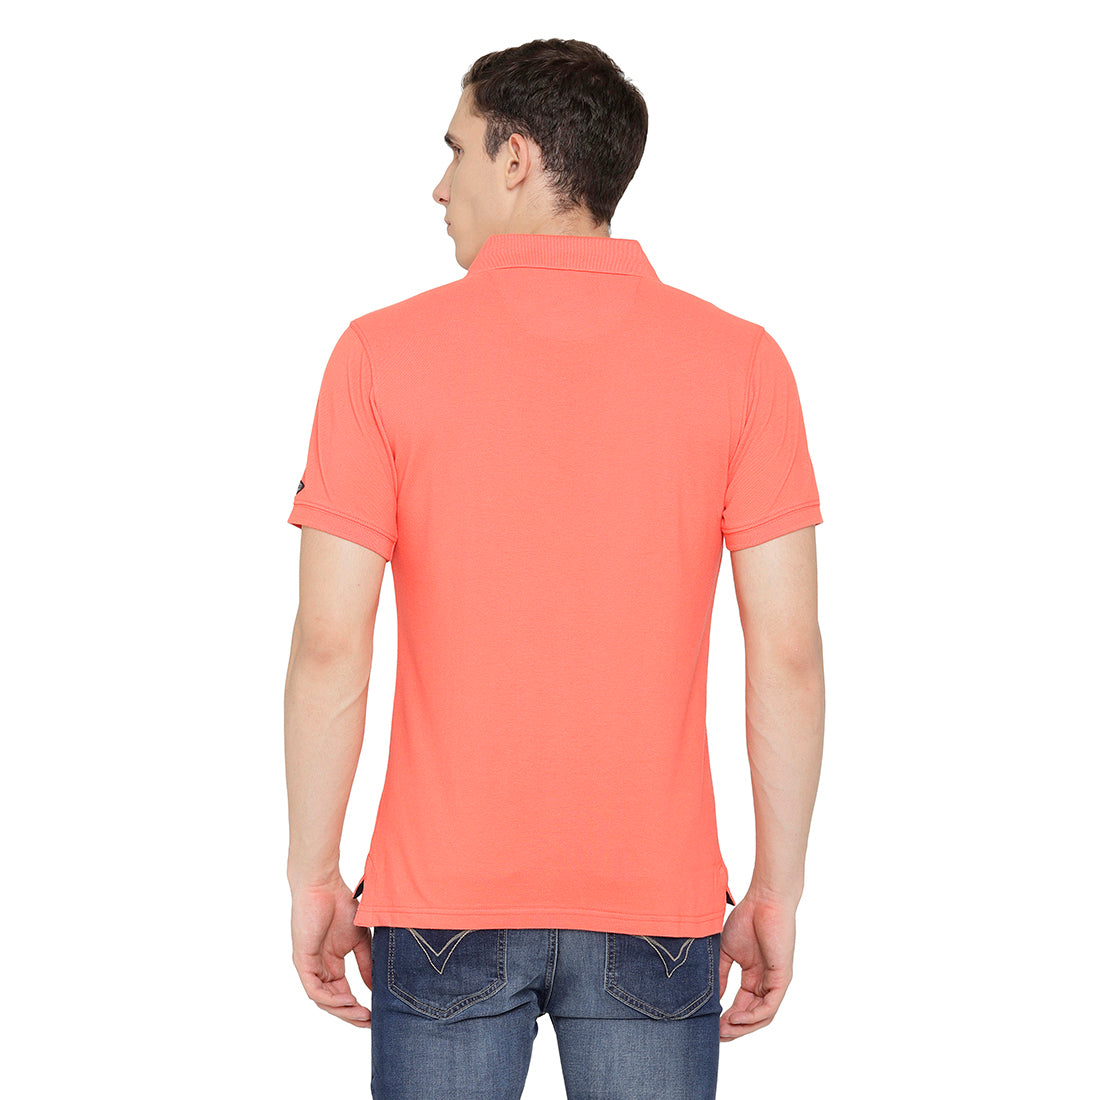 Peach color Polo T-Shirt pique